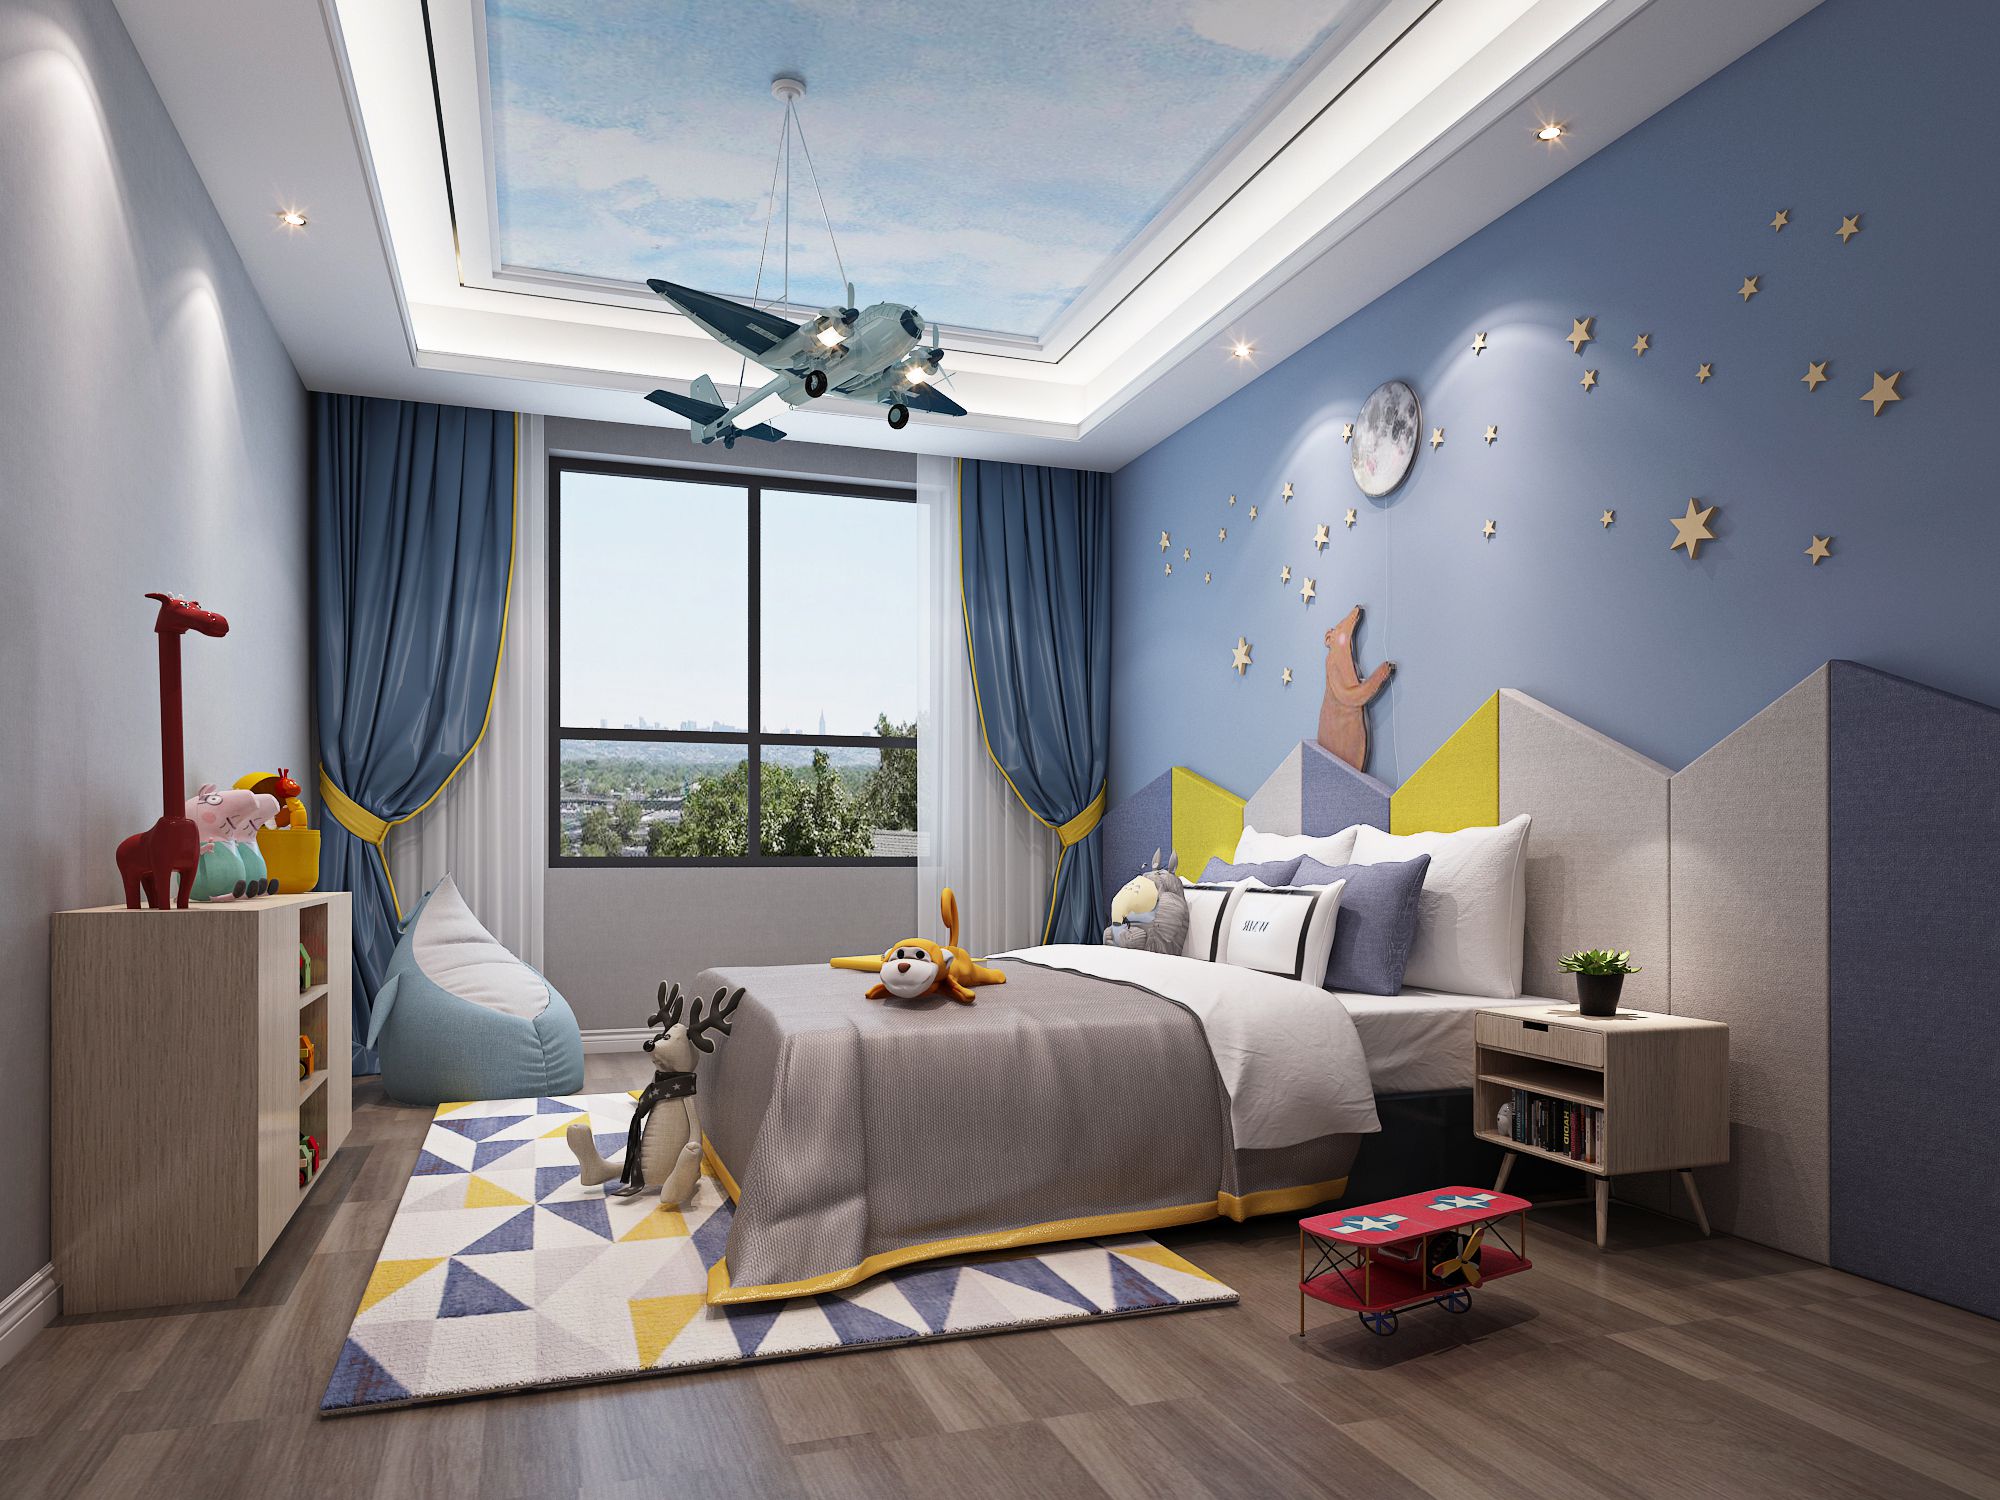 奉贤区棕榈滩590平欧式风格独栋别墅卧室装修效果图